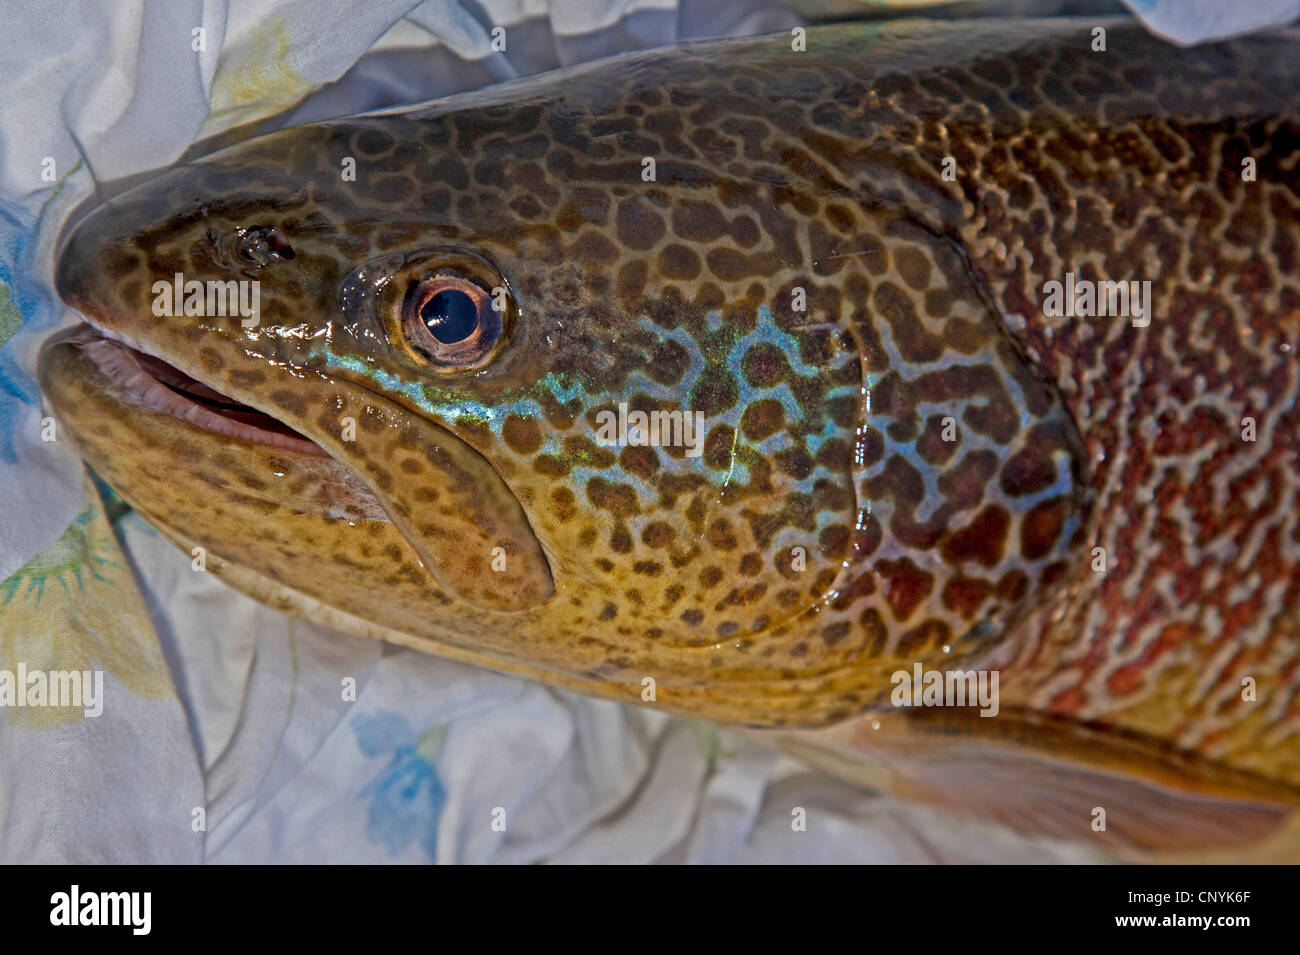 En truites (Salmo trutta), portrait d'un poisson dans une pisciculture Banque D'Images